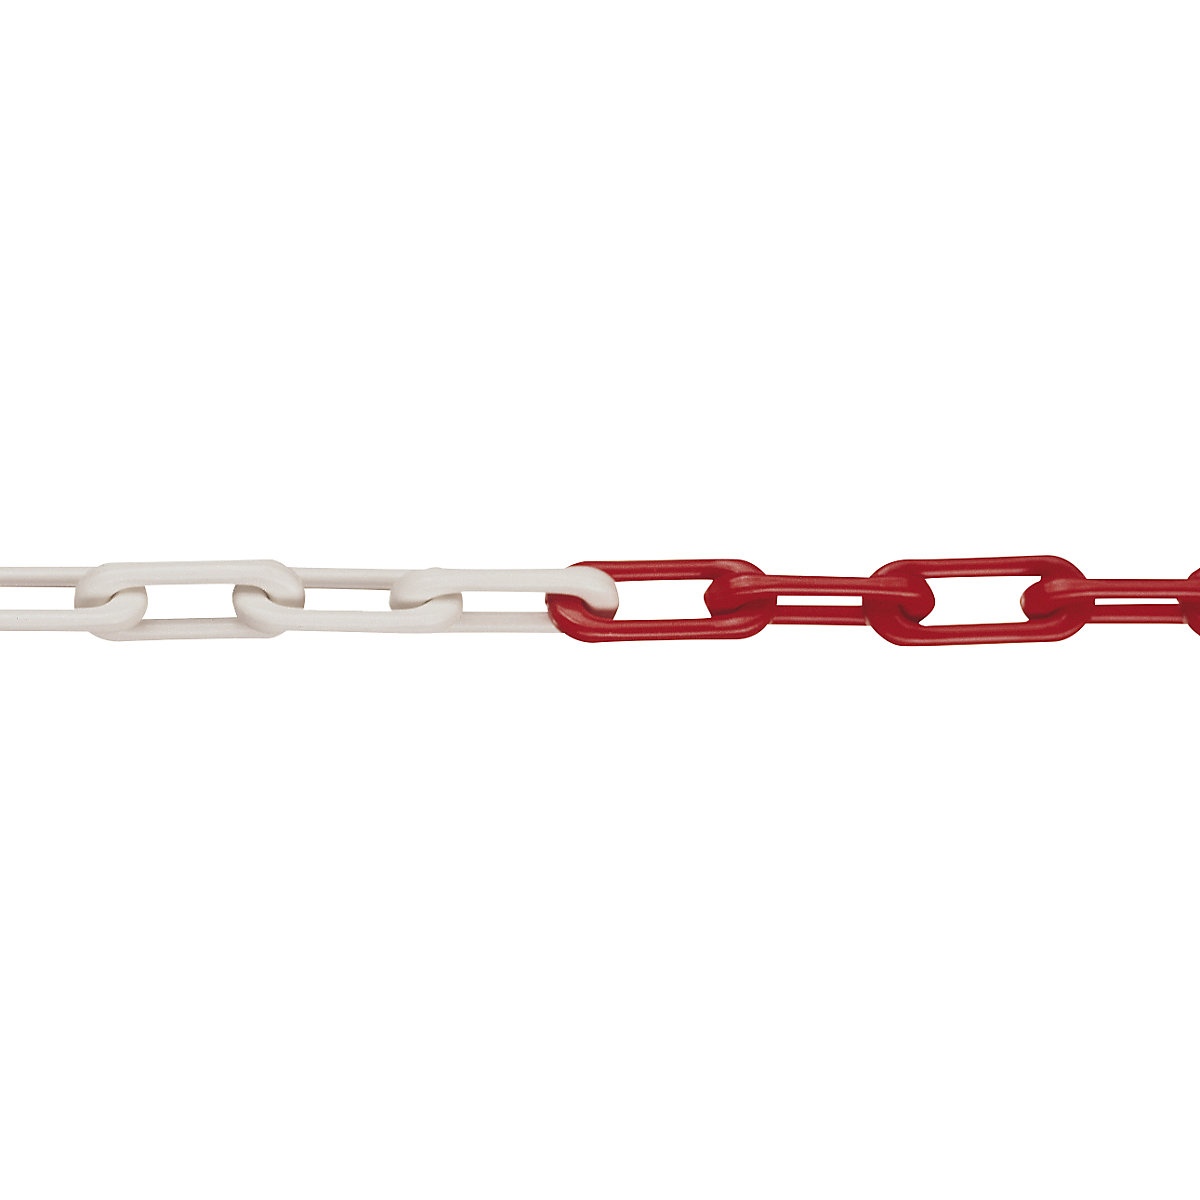 Nylon-kwaliteitsketting, MNK-kwaliteit 6, lengte 50 m, rood-wit, vanaf 10 stuks-4